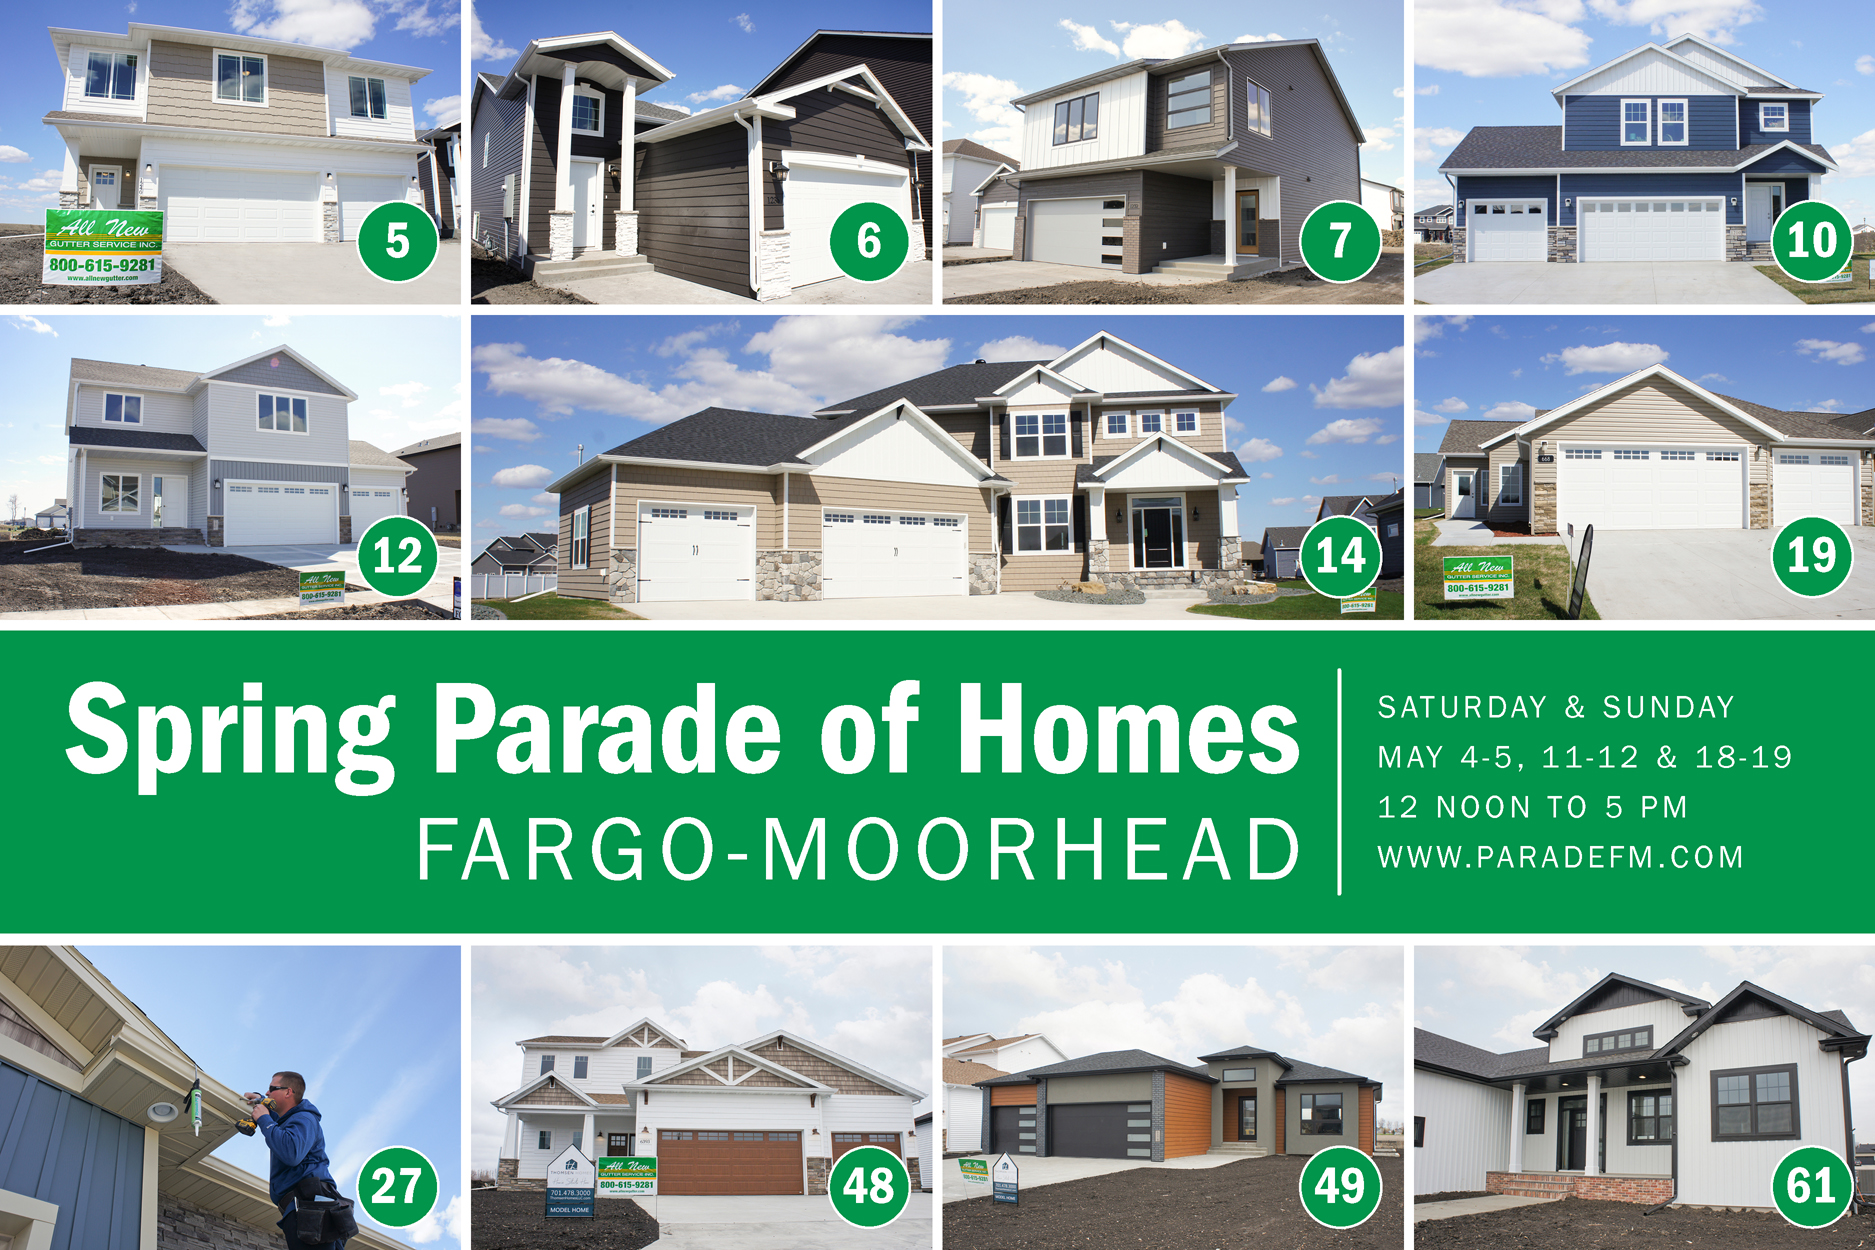 2019 Spring Parade Of Homes Fargo